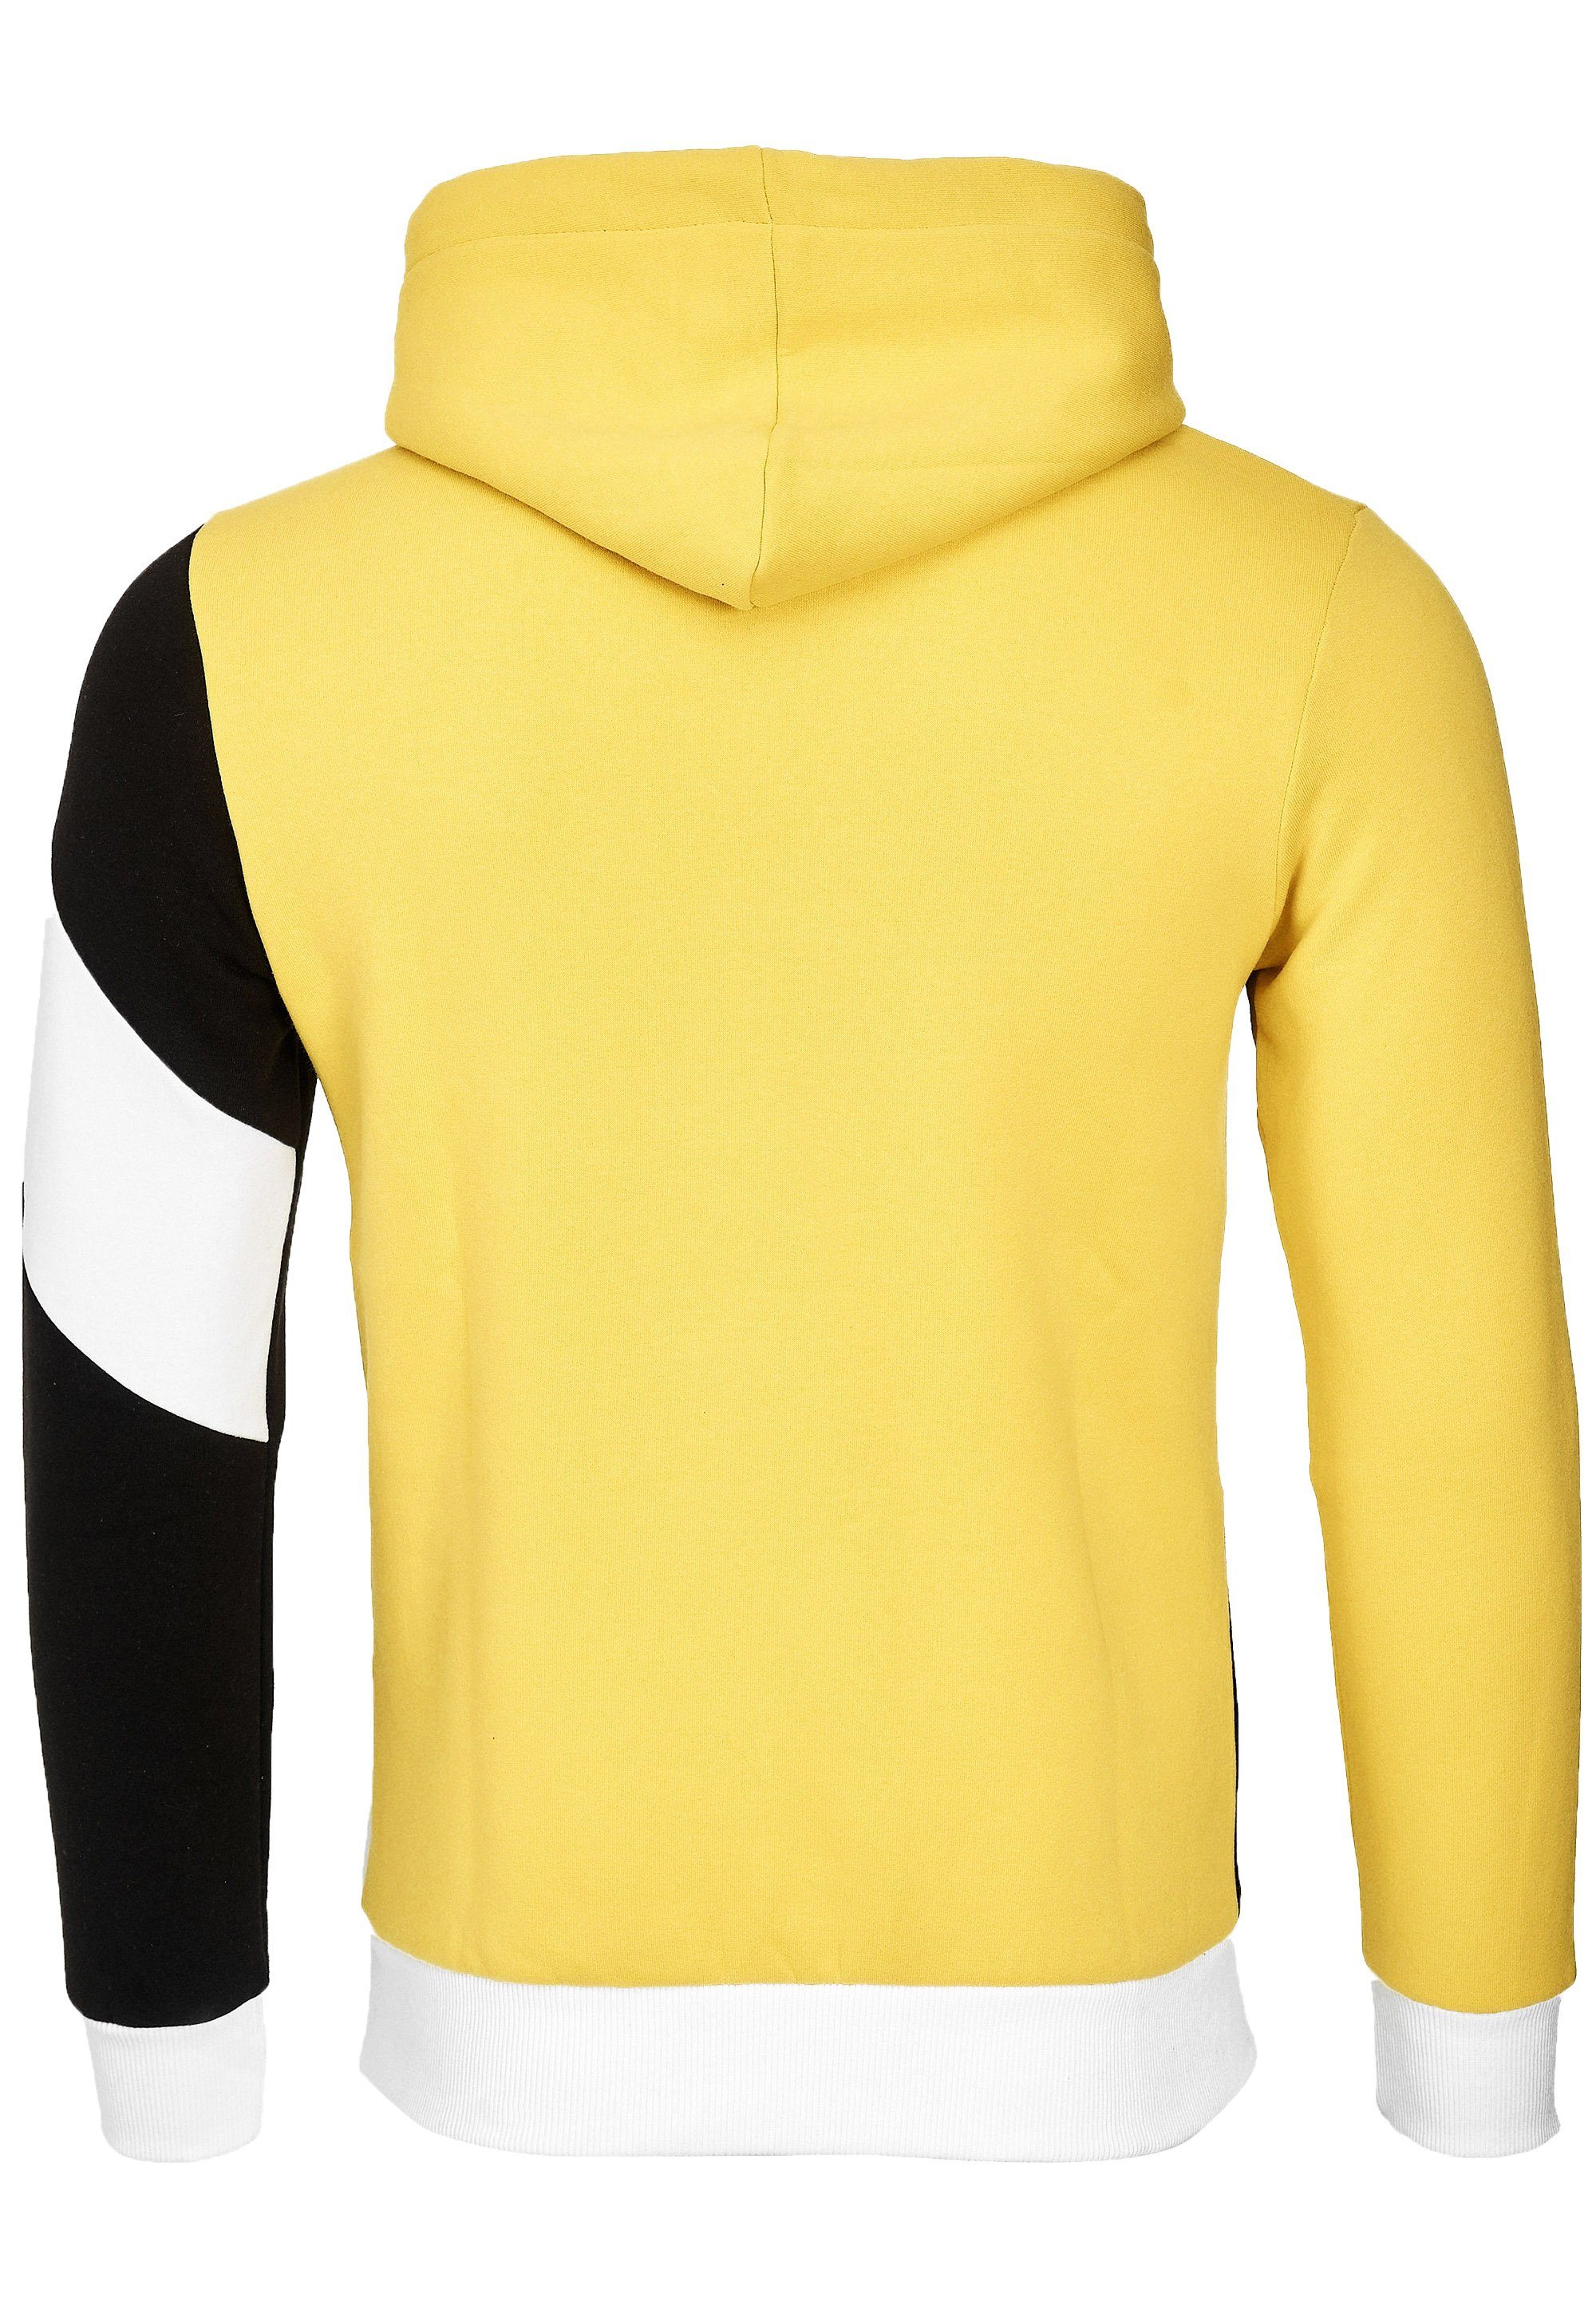 Rusty Neal Kapuzensweatshirt in sportlichem Design gelb-schwarz